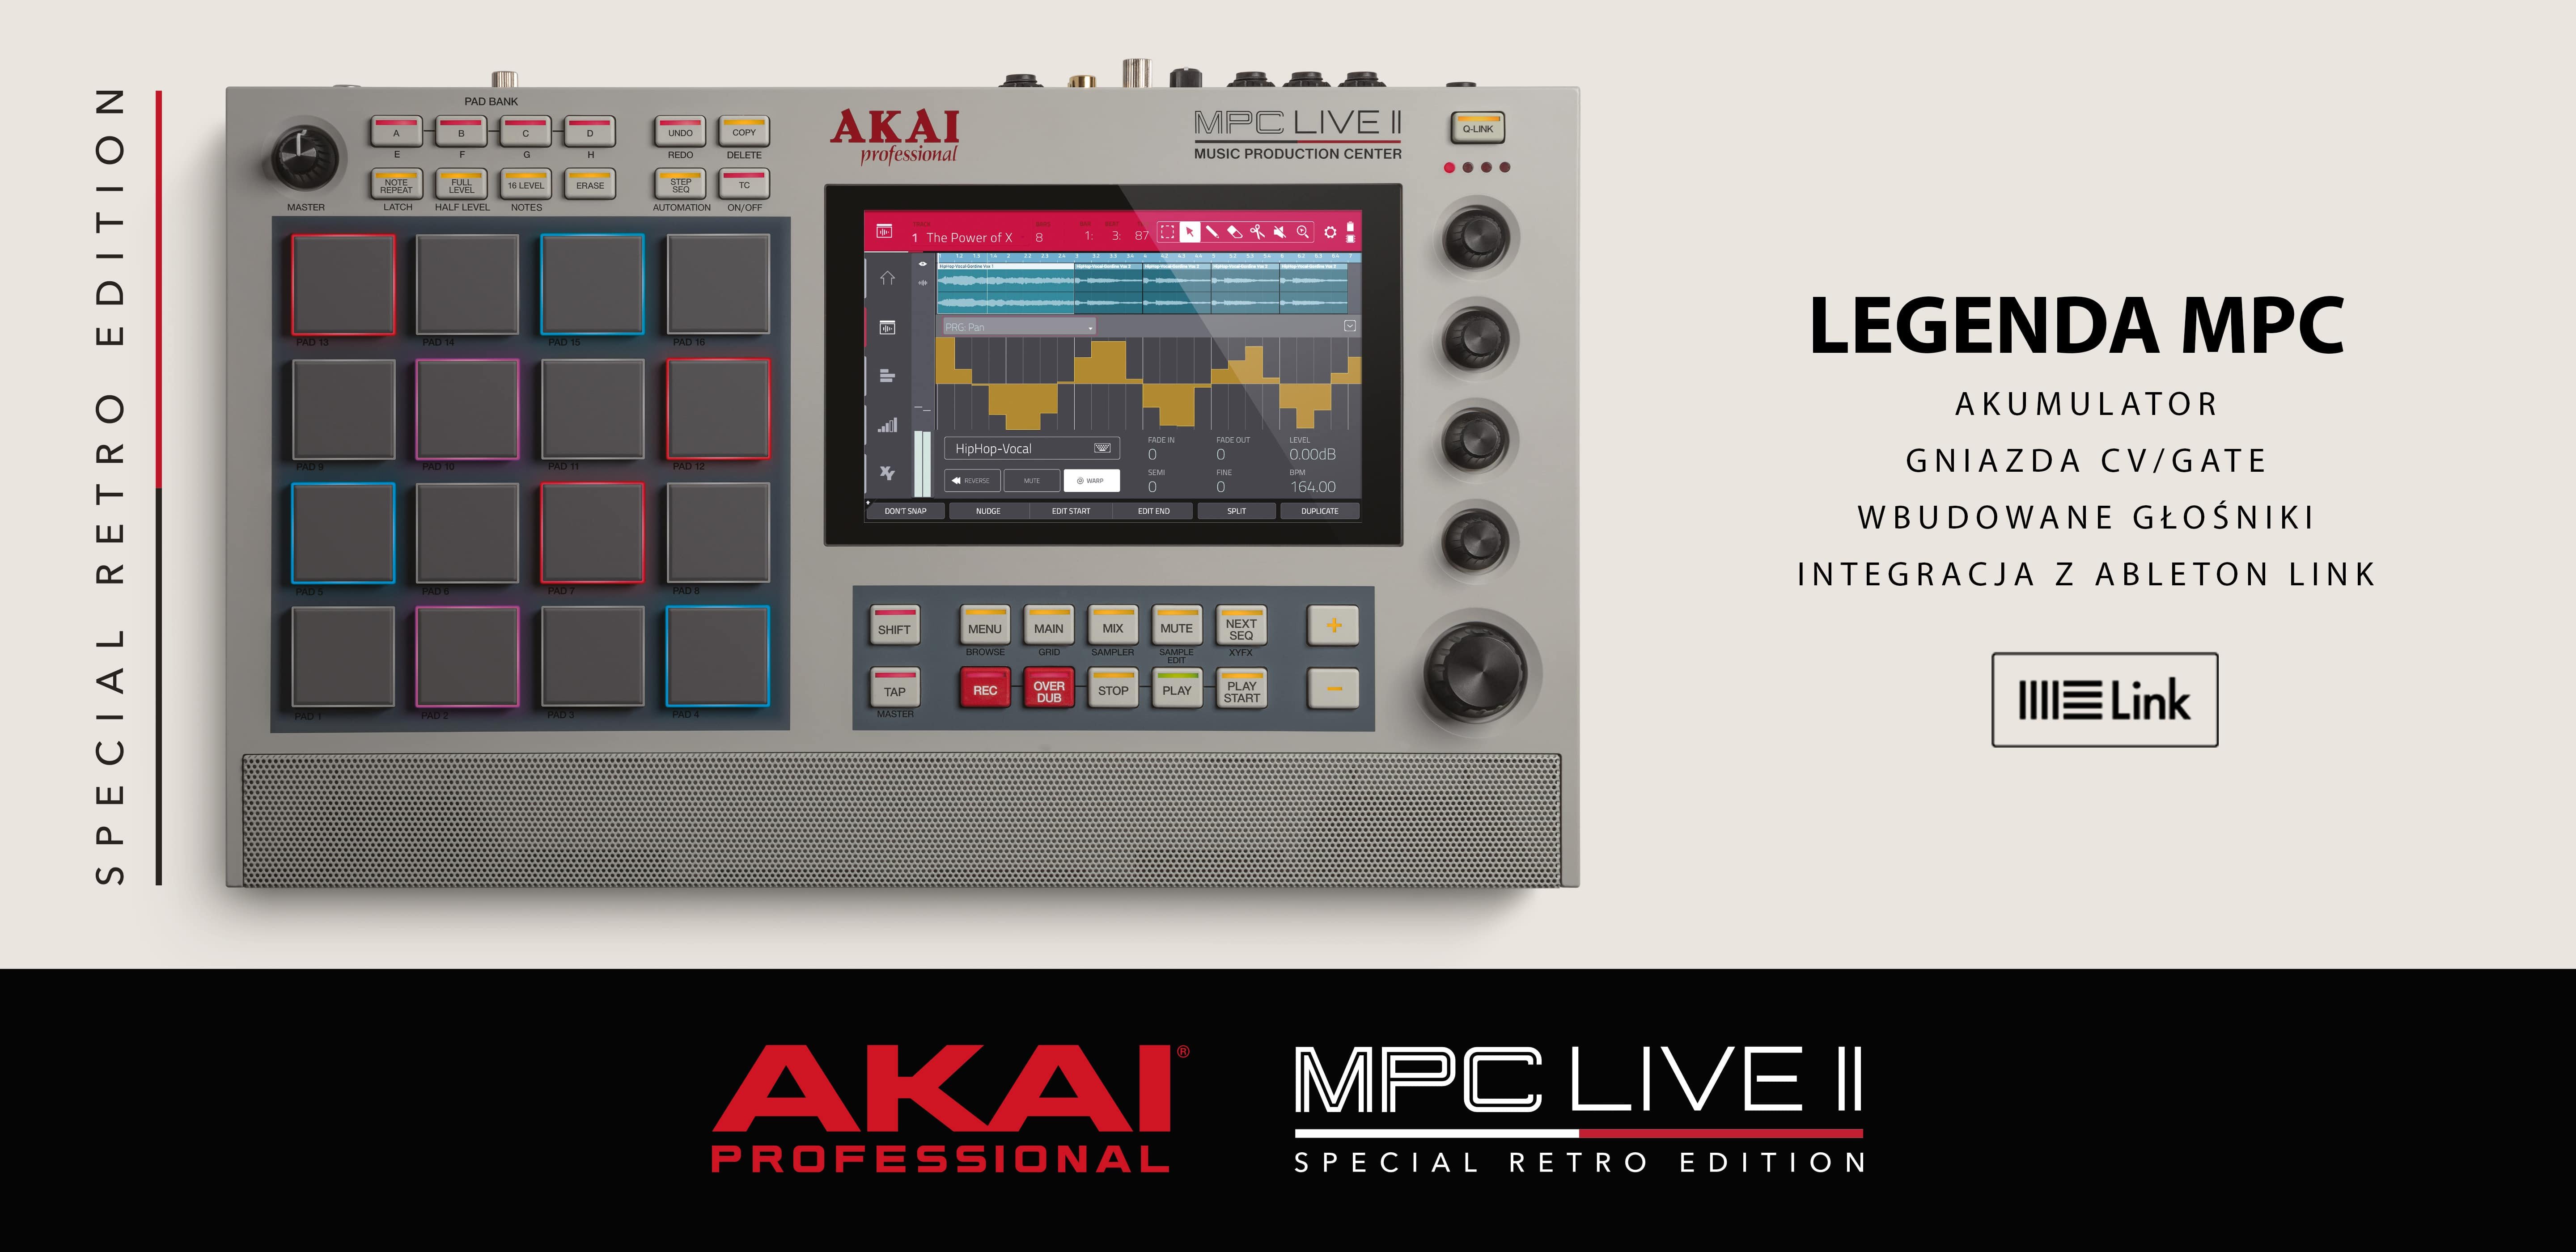 Firma Akai Professional zapowiedziała edycję MPC Live II Retro! 